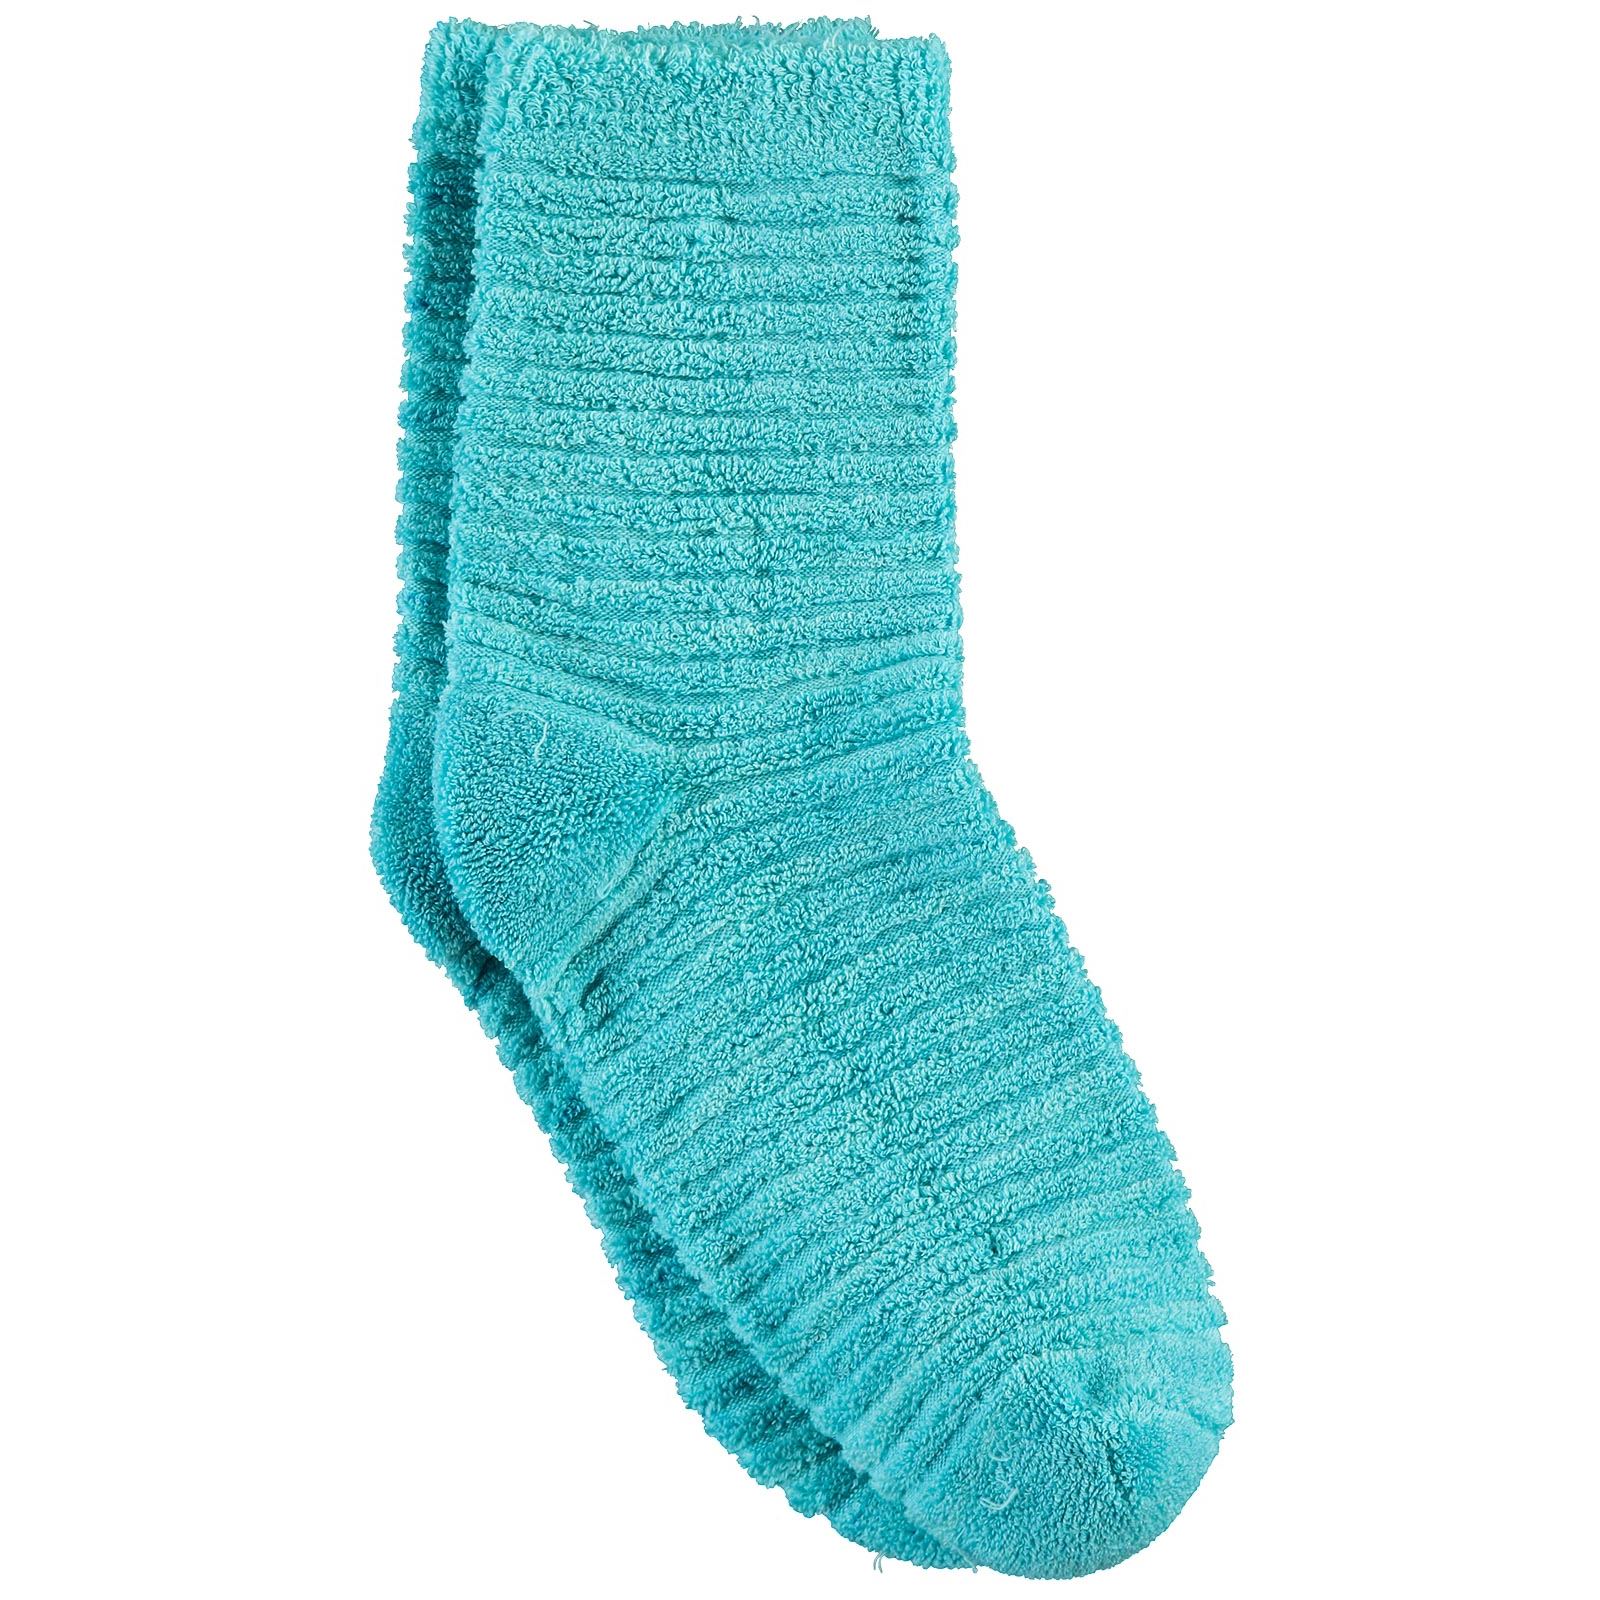 Bella Calze Kız Çocuk Ters Havlu Soket Çorap 36-40 Numara Turkuaz